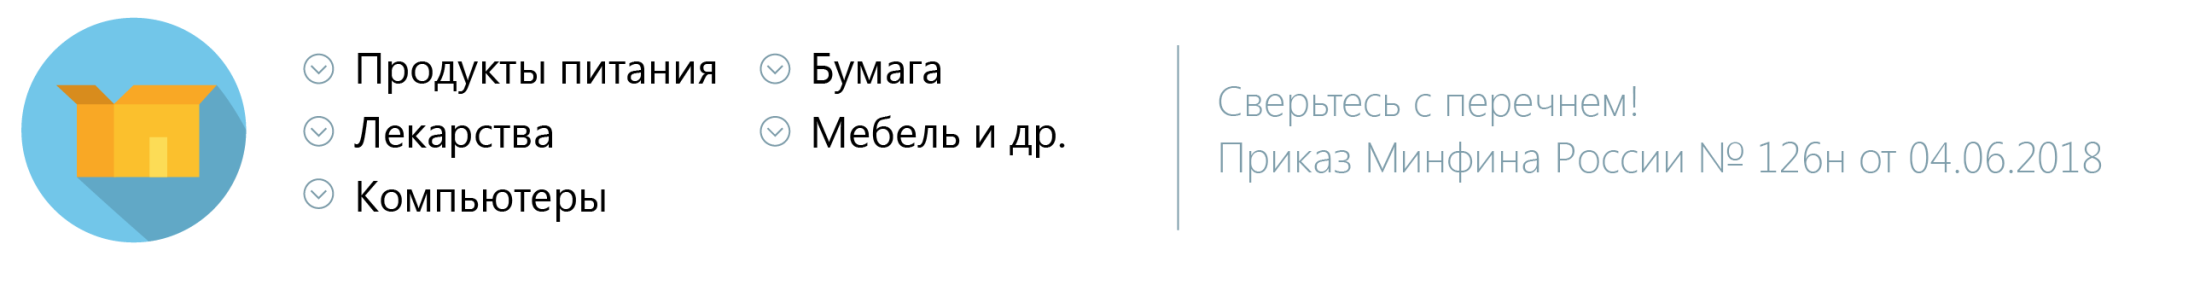 832 Постановление правительства РФ по 44 ФЗ С последними изменениями.